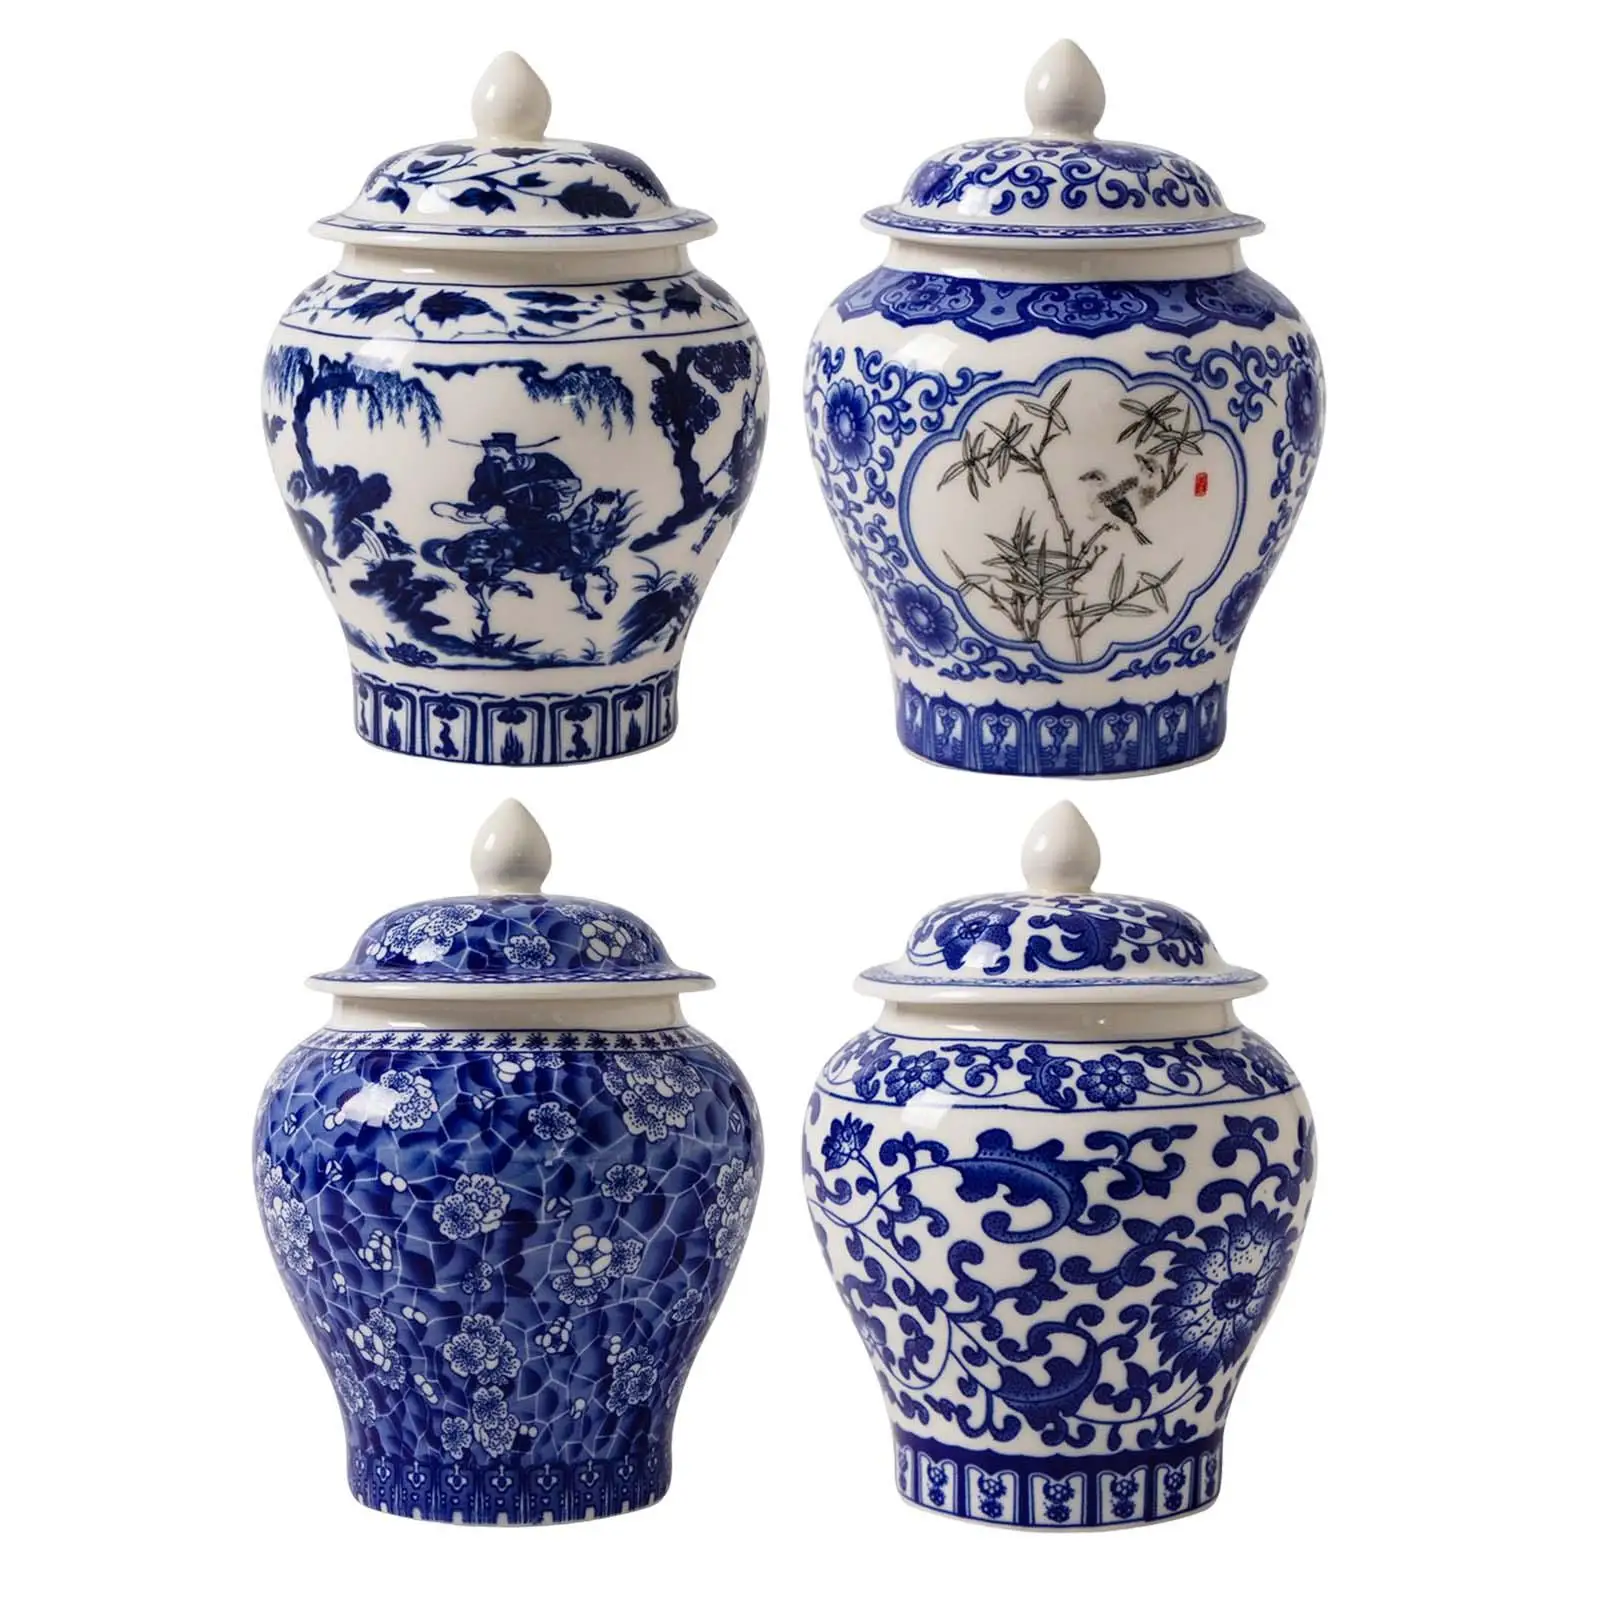 Ceramic Ginger Jar Vintage Style Gift Chinese Crafts Porcelain Jars for Desktop Home Decor Countertop Party Floral Arrangement